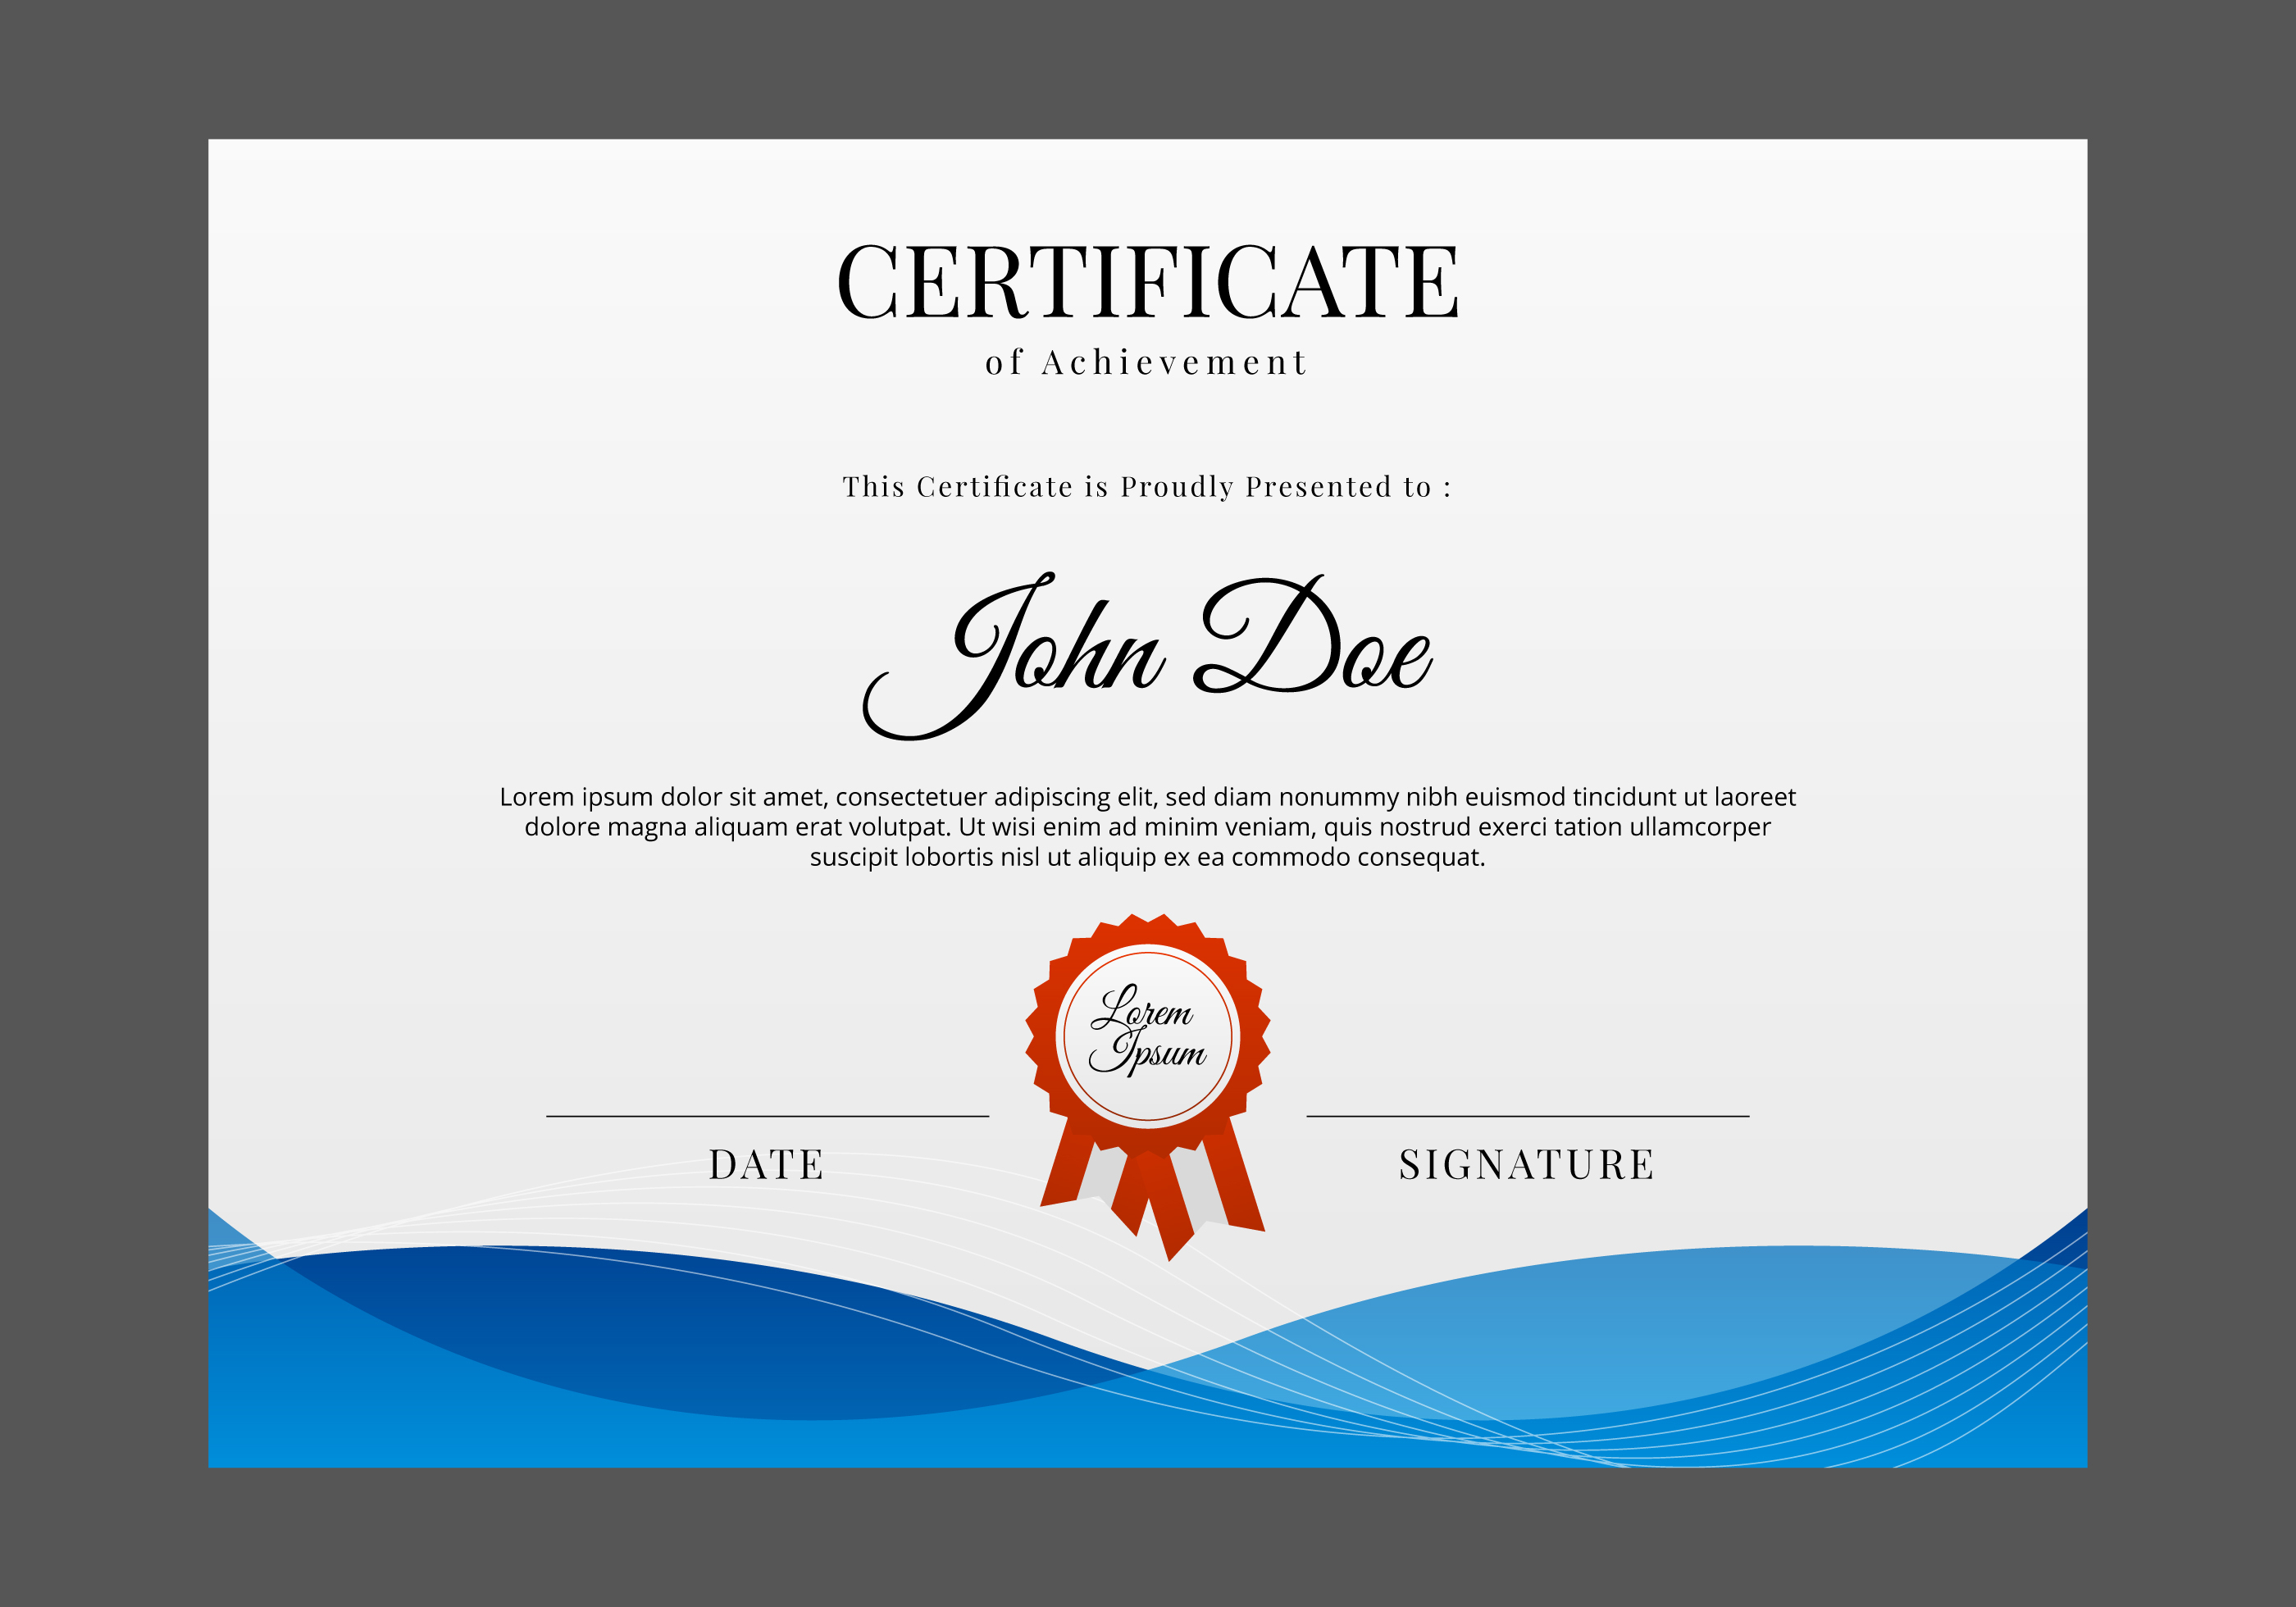 Certificate Design Free Vector Art – (10,192 Free Downloads) In Design A Certificate Template